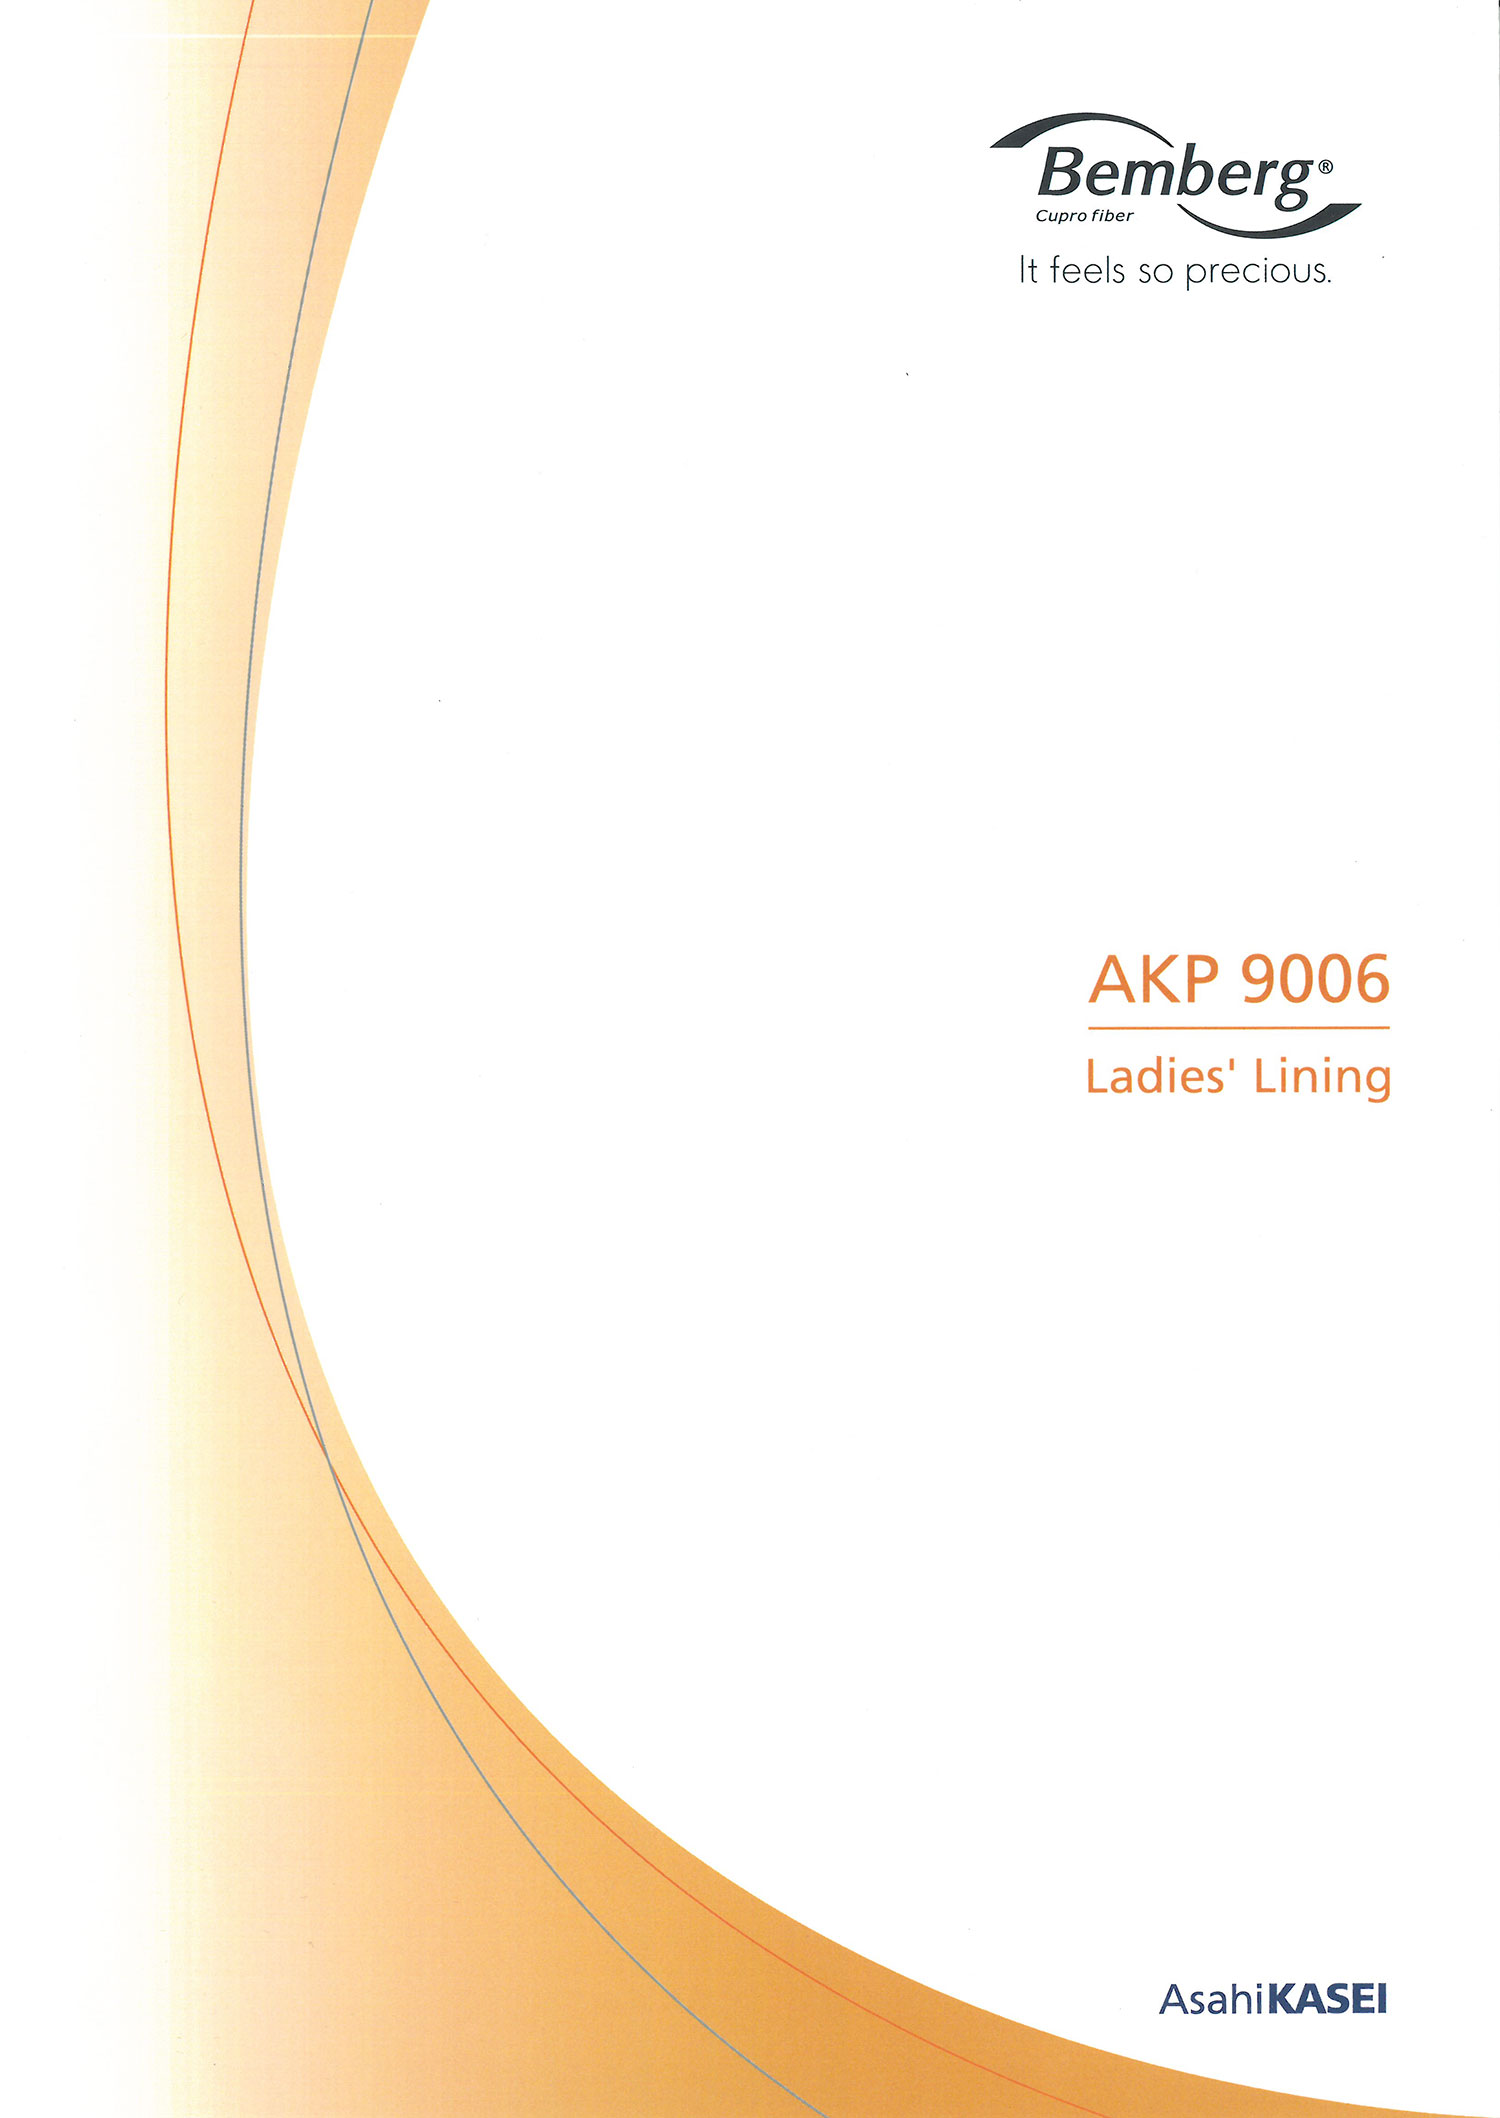 AKP9006 Bemberg Vải Lót Lagjour Asahi KASEI